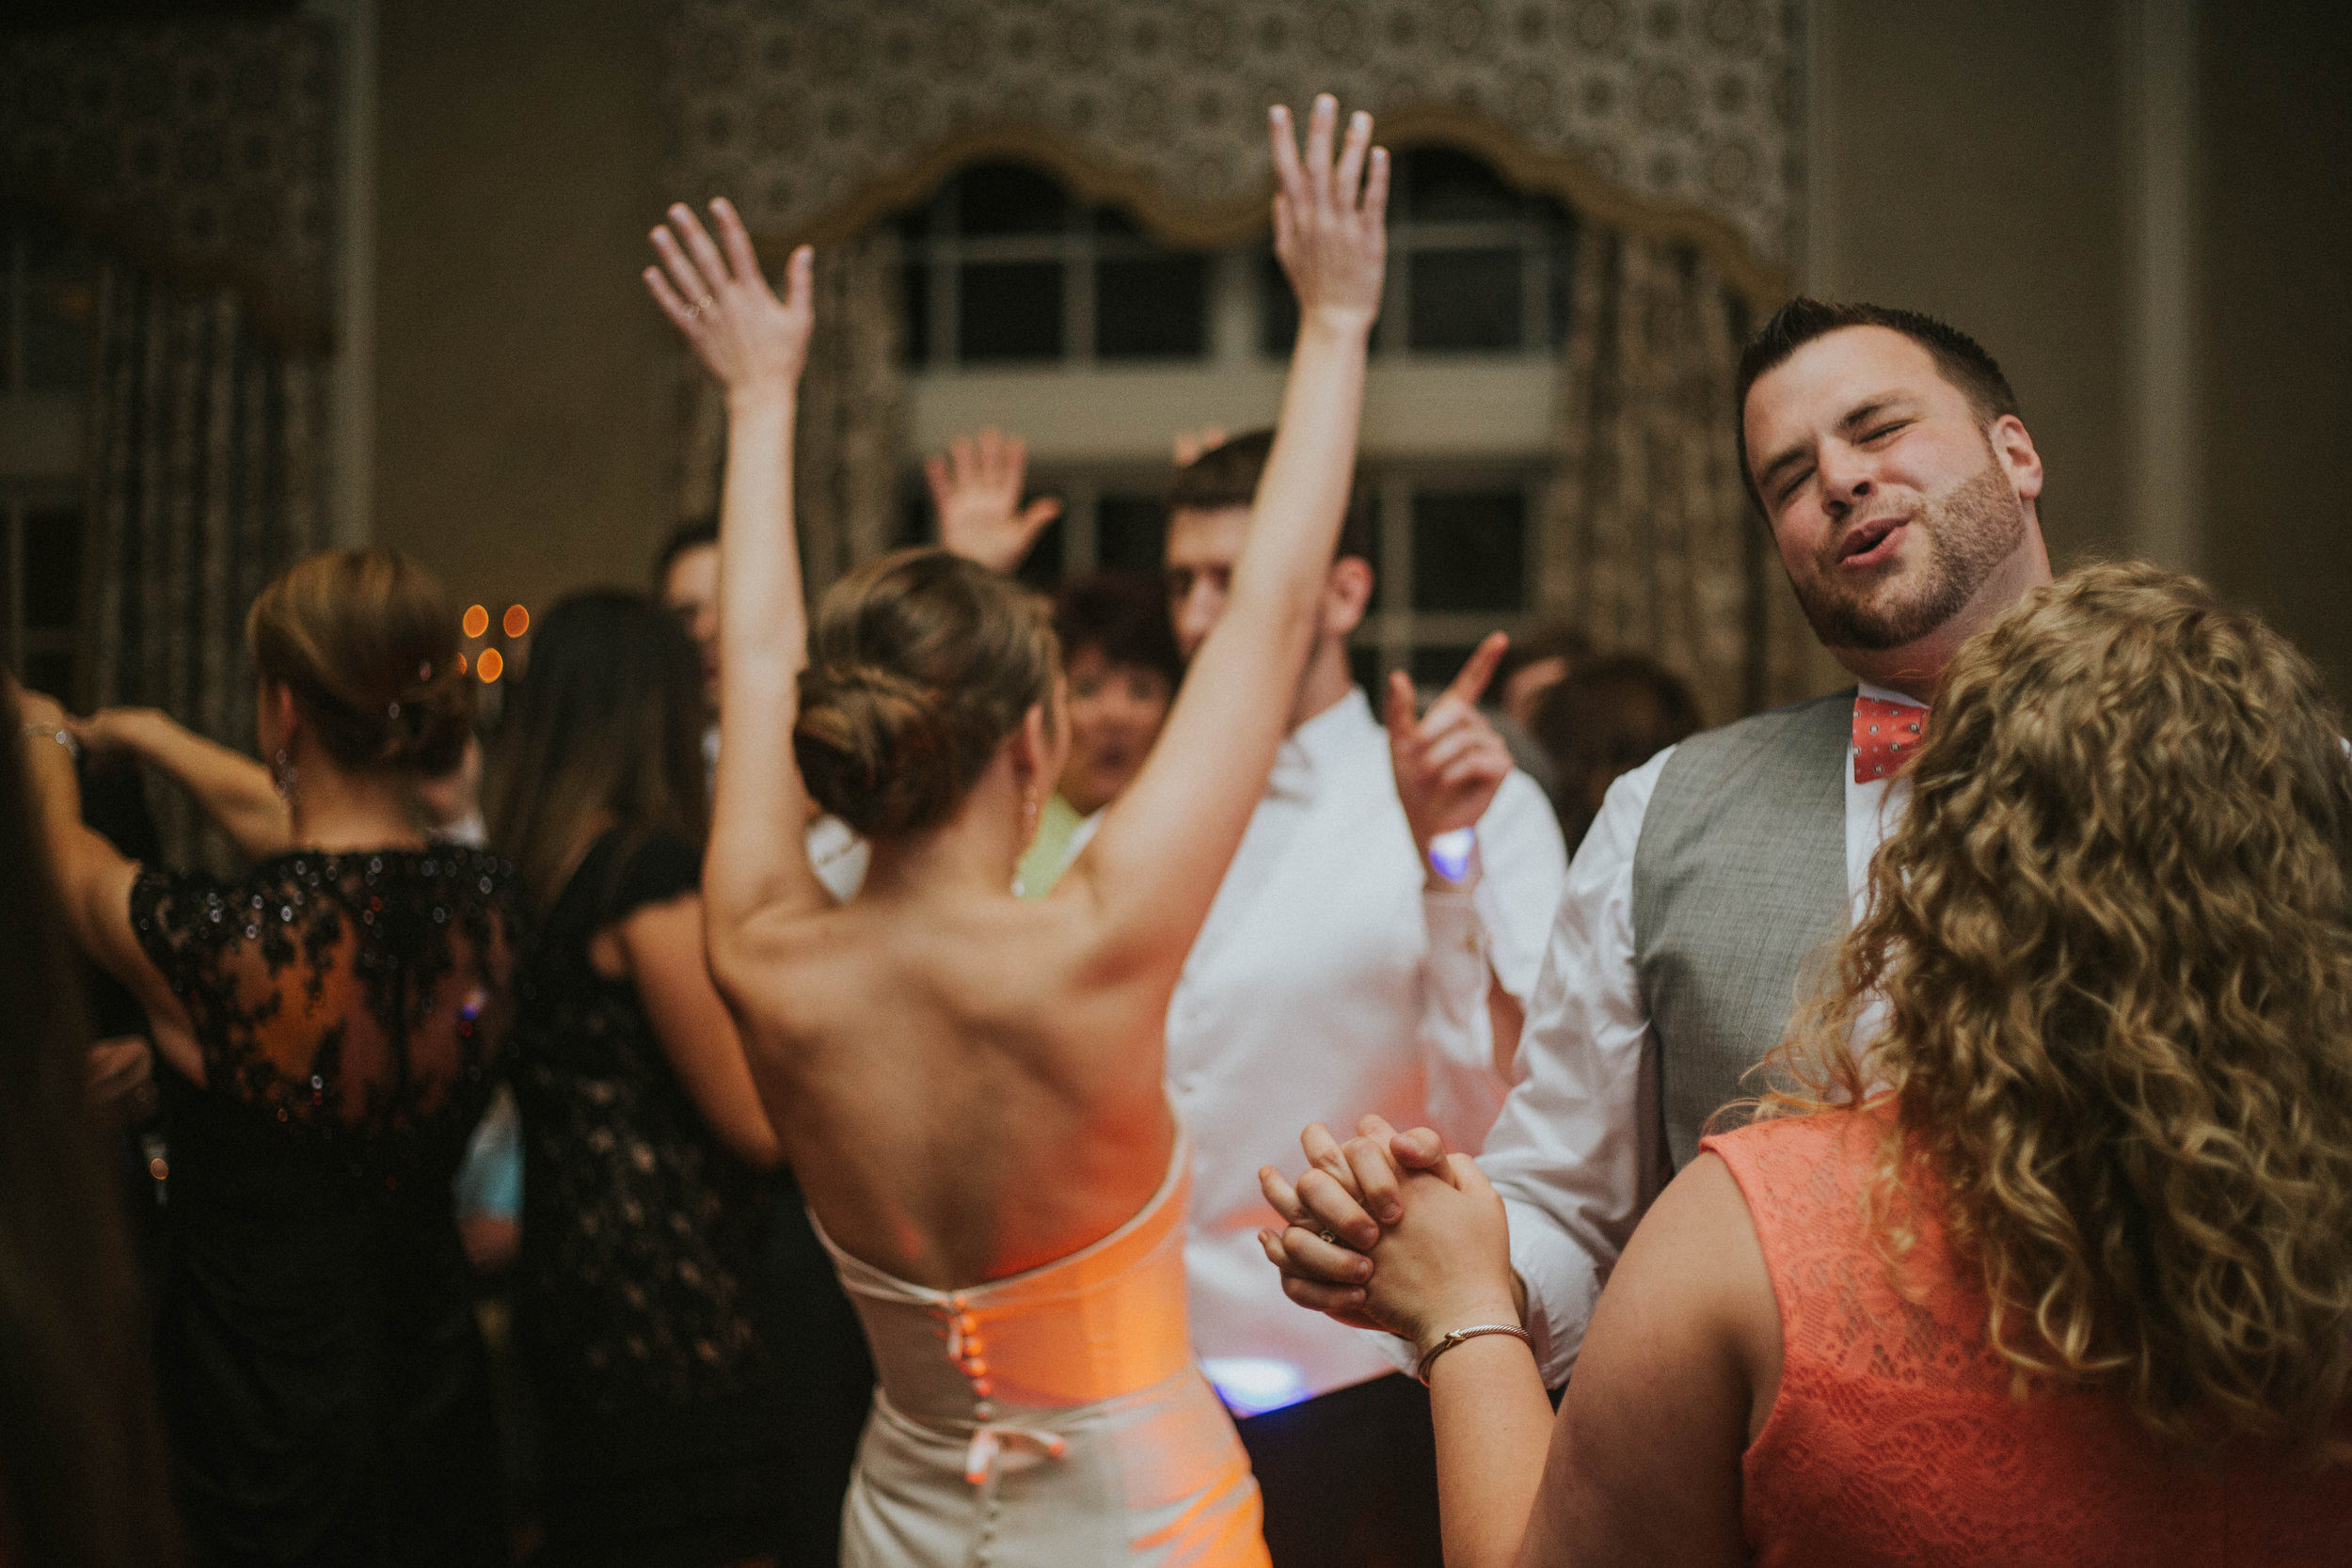 70 Best Wedding Dance Songs for Siblings